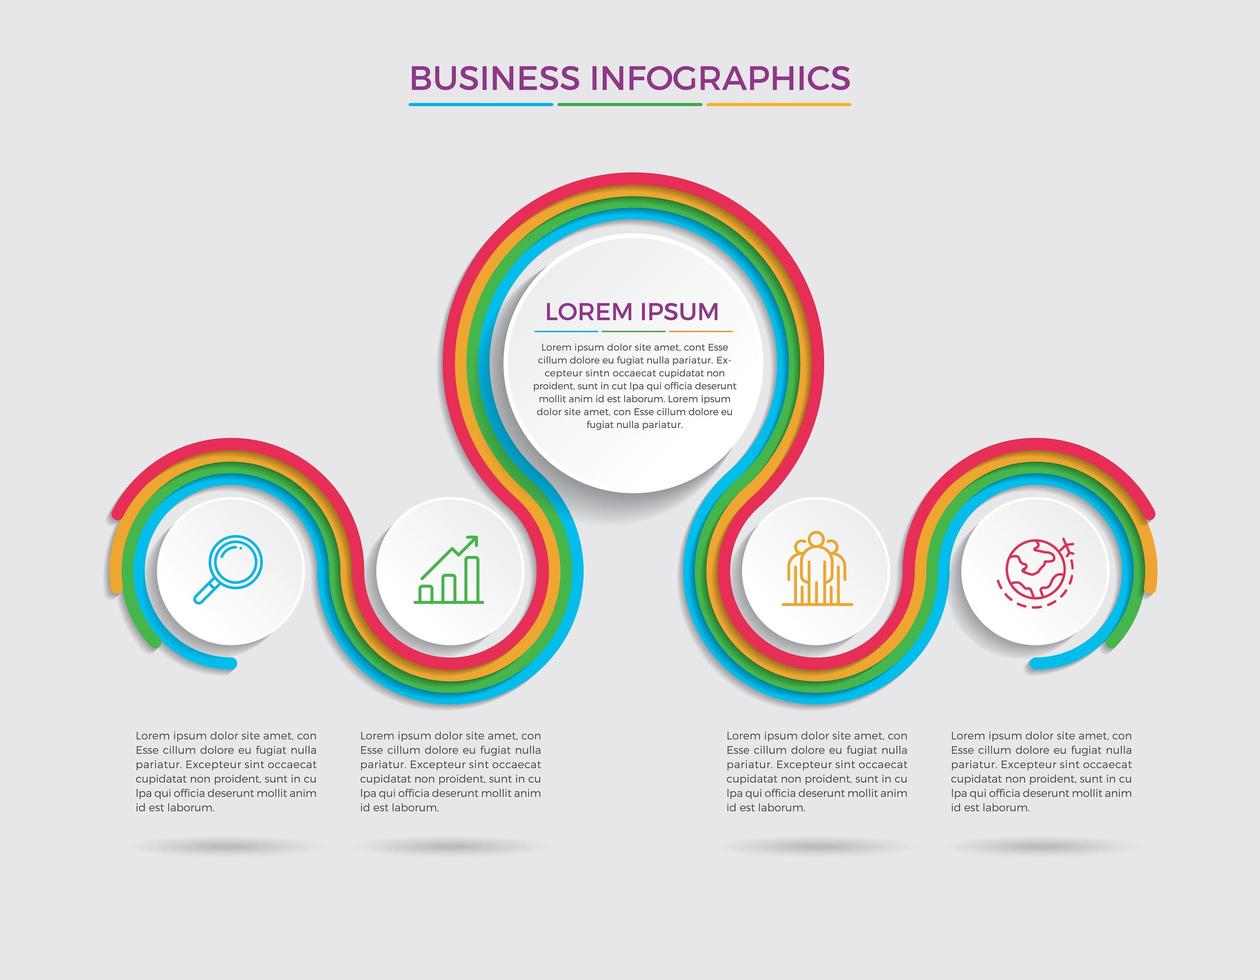 illustrazione di vettore di progettazione infografica concetto di affari